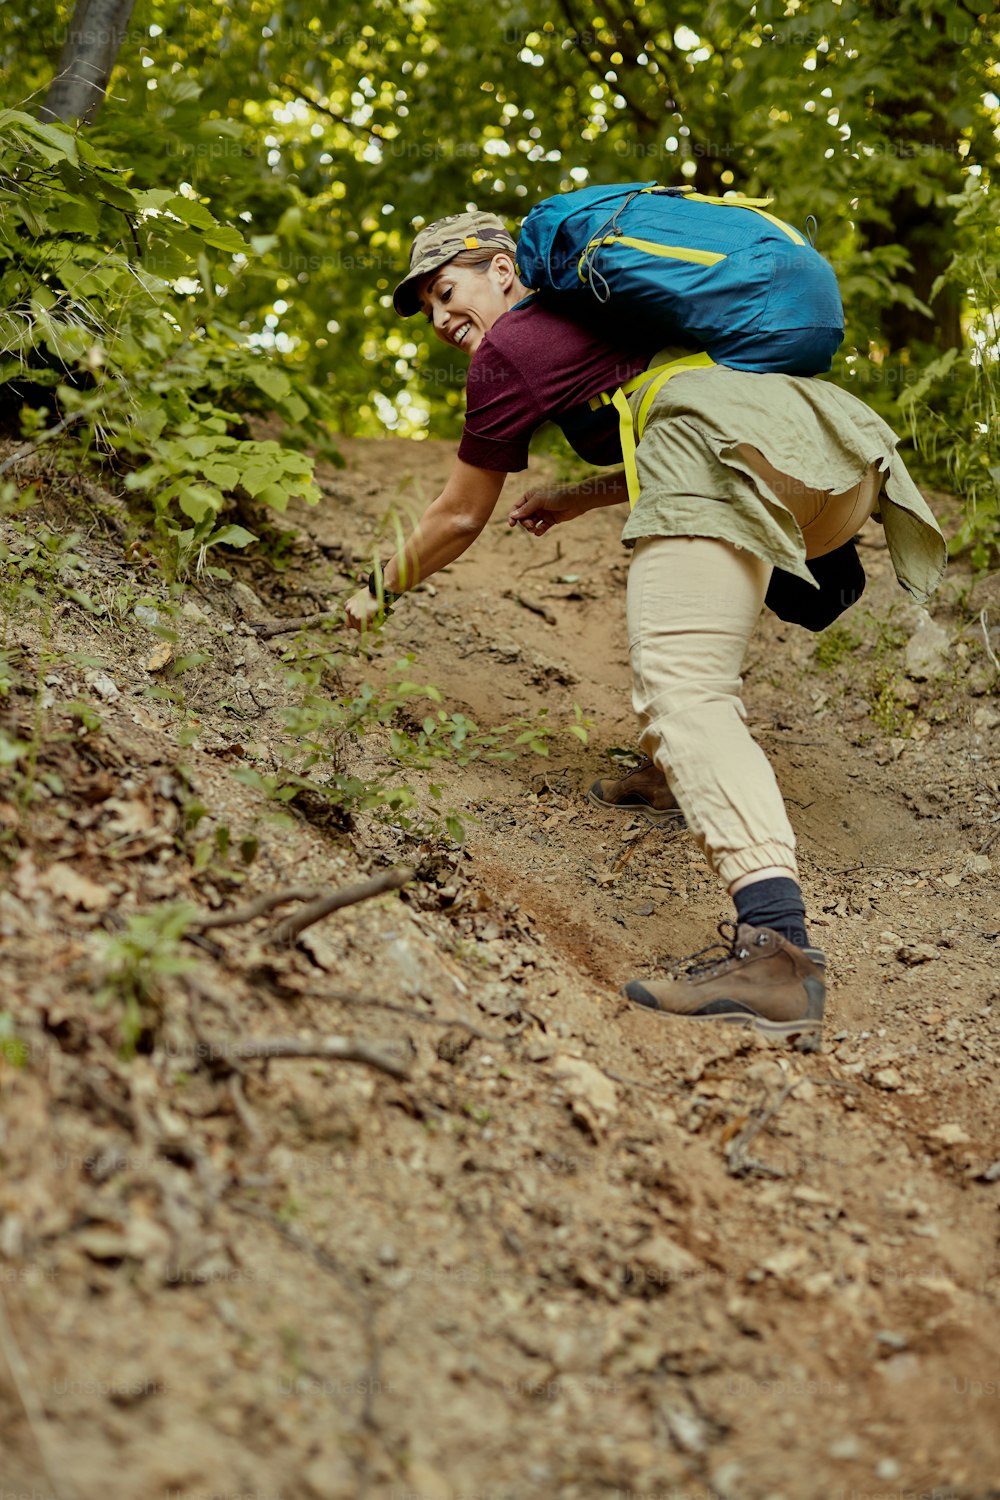 Vista dal basso dell'escursionista felice con lo zaino che si arrampica lungo il sentiero forestale polveroso. Copia spazio.